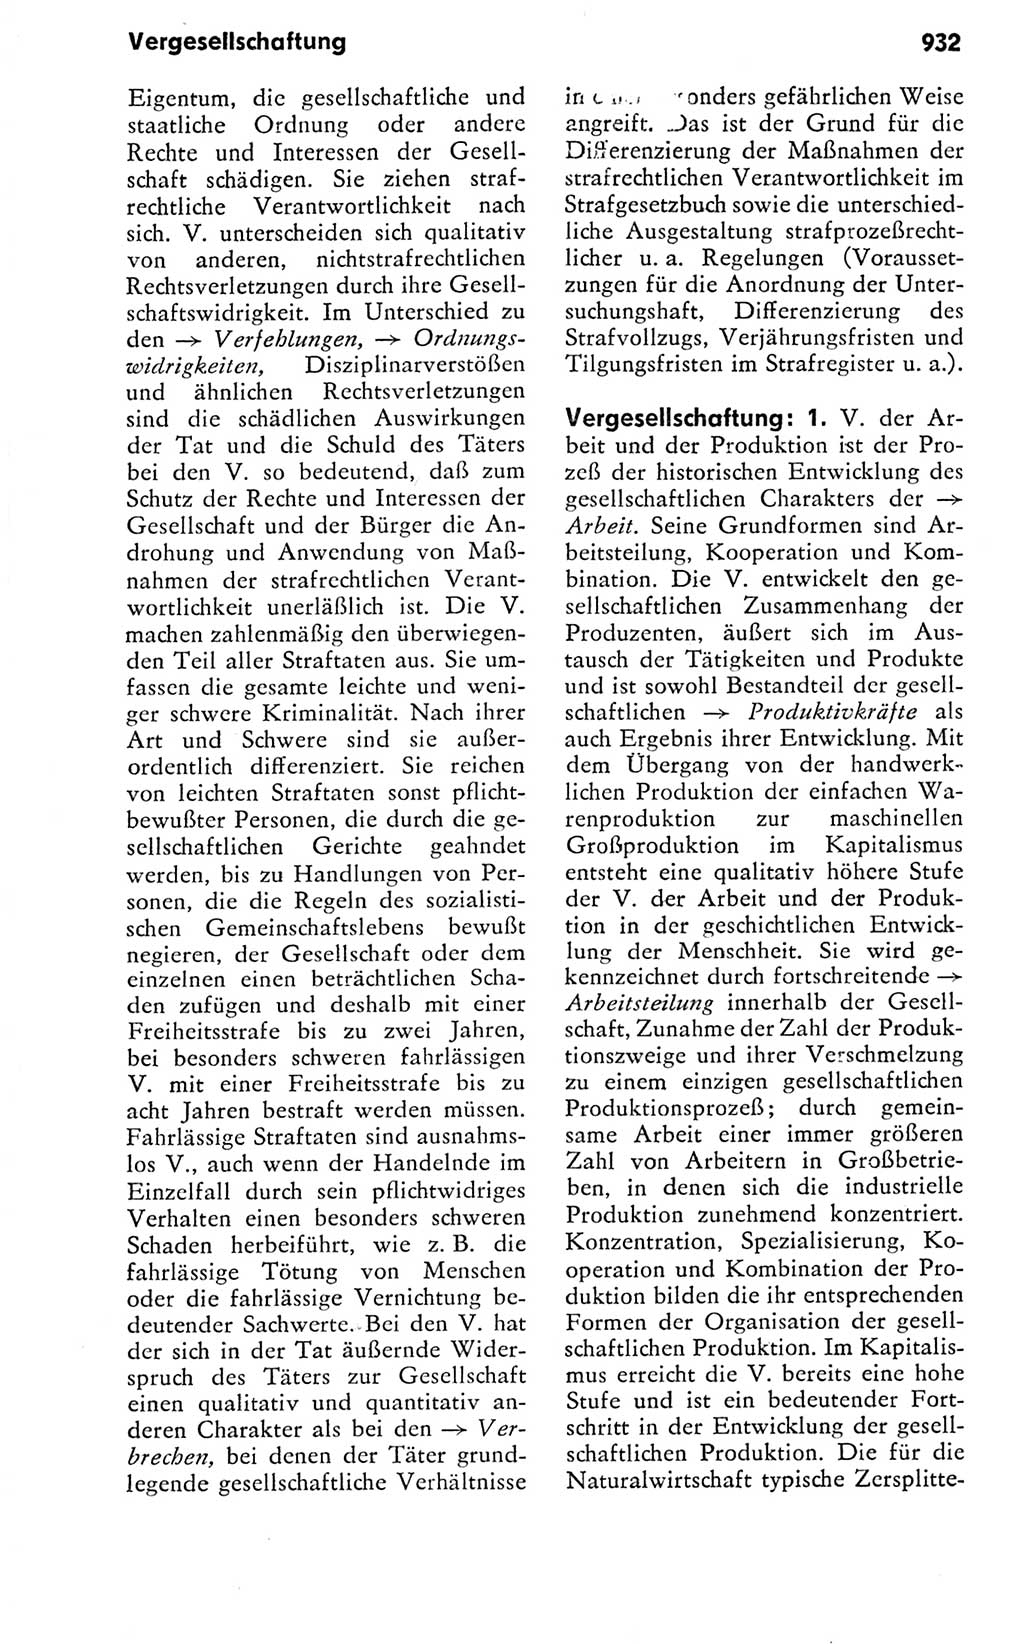 Kleines politisches Wörterbuch [Deutsche Demokratische Republik (DDR)] 1978, Seite 932 (Kl. pol. Wb. DDR 1978, S. 932)